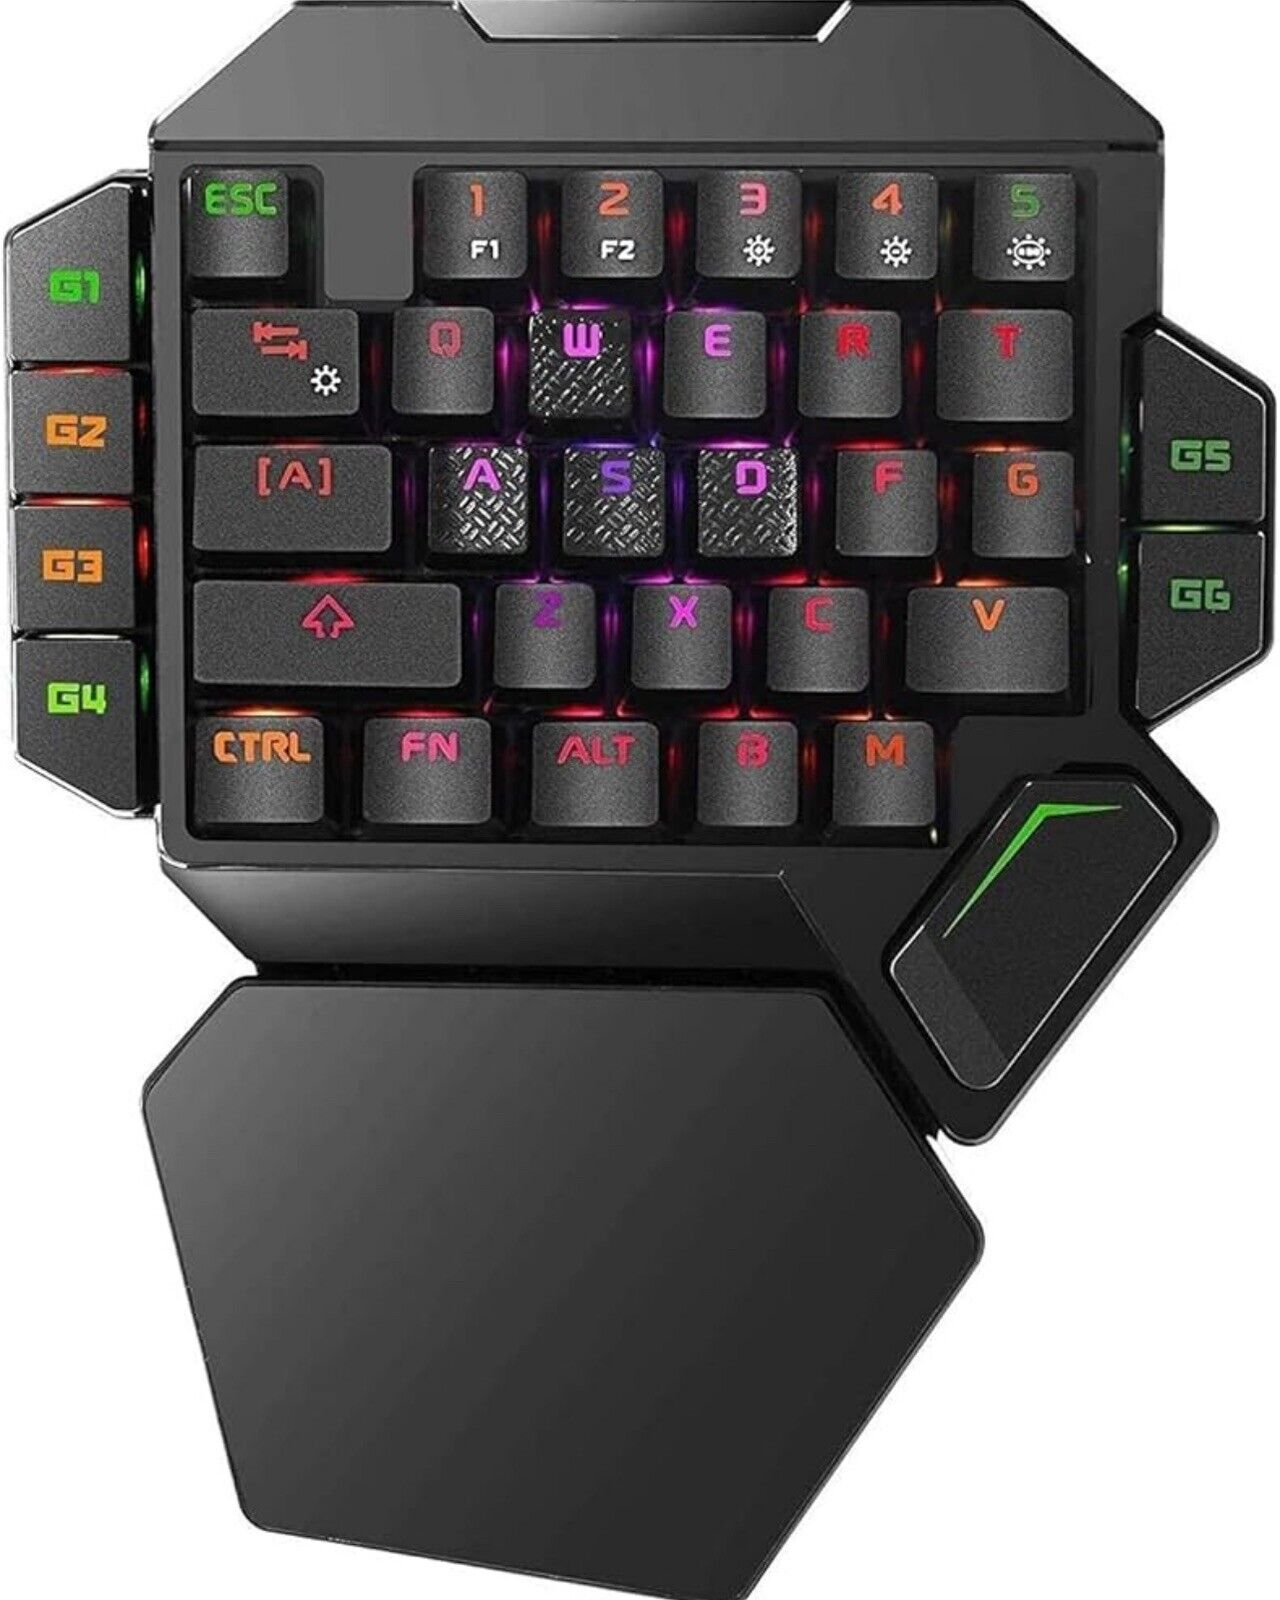 K50 One-hand Mechanical Gaming Keyboard